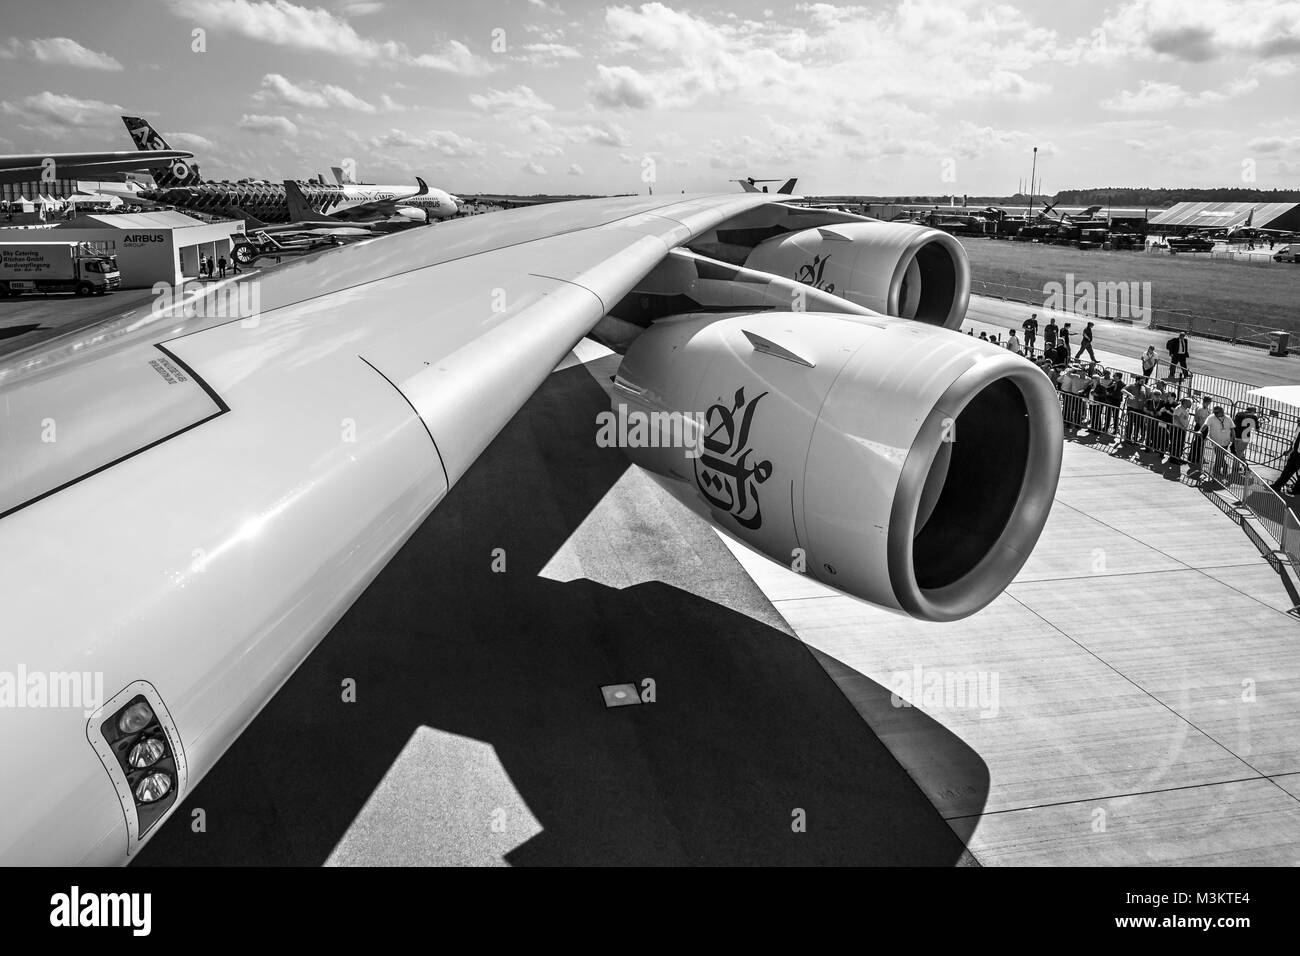 Berlino, Germania - 01 giugno 2016: dettaglio del parafango e un motore turbofan 'Engine Alliance GP7000' di aeromobili più grandi del mondo - Airbus A380. Emirates Airline. In bianco e nero. Mostra ILA Berlin Air Show 2016 Foto Stock